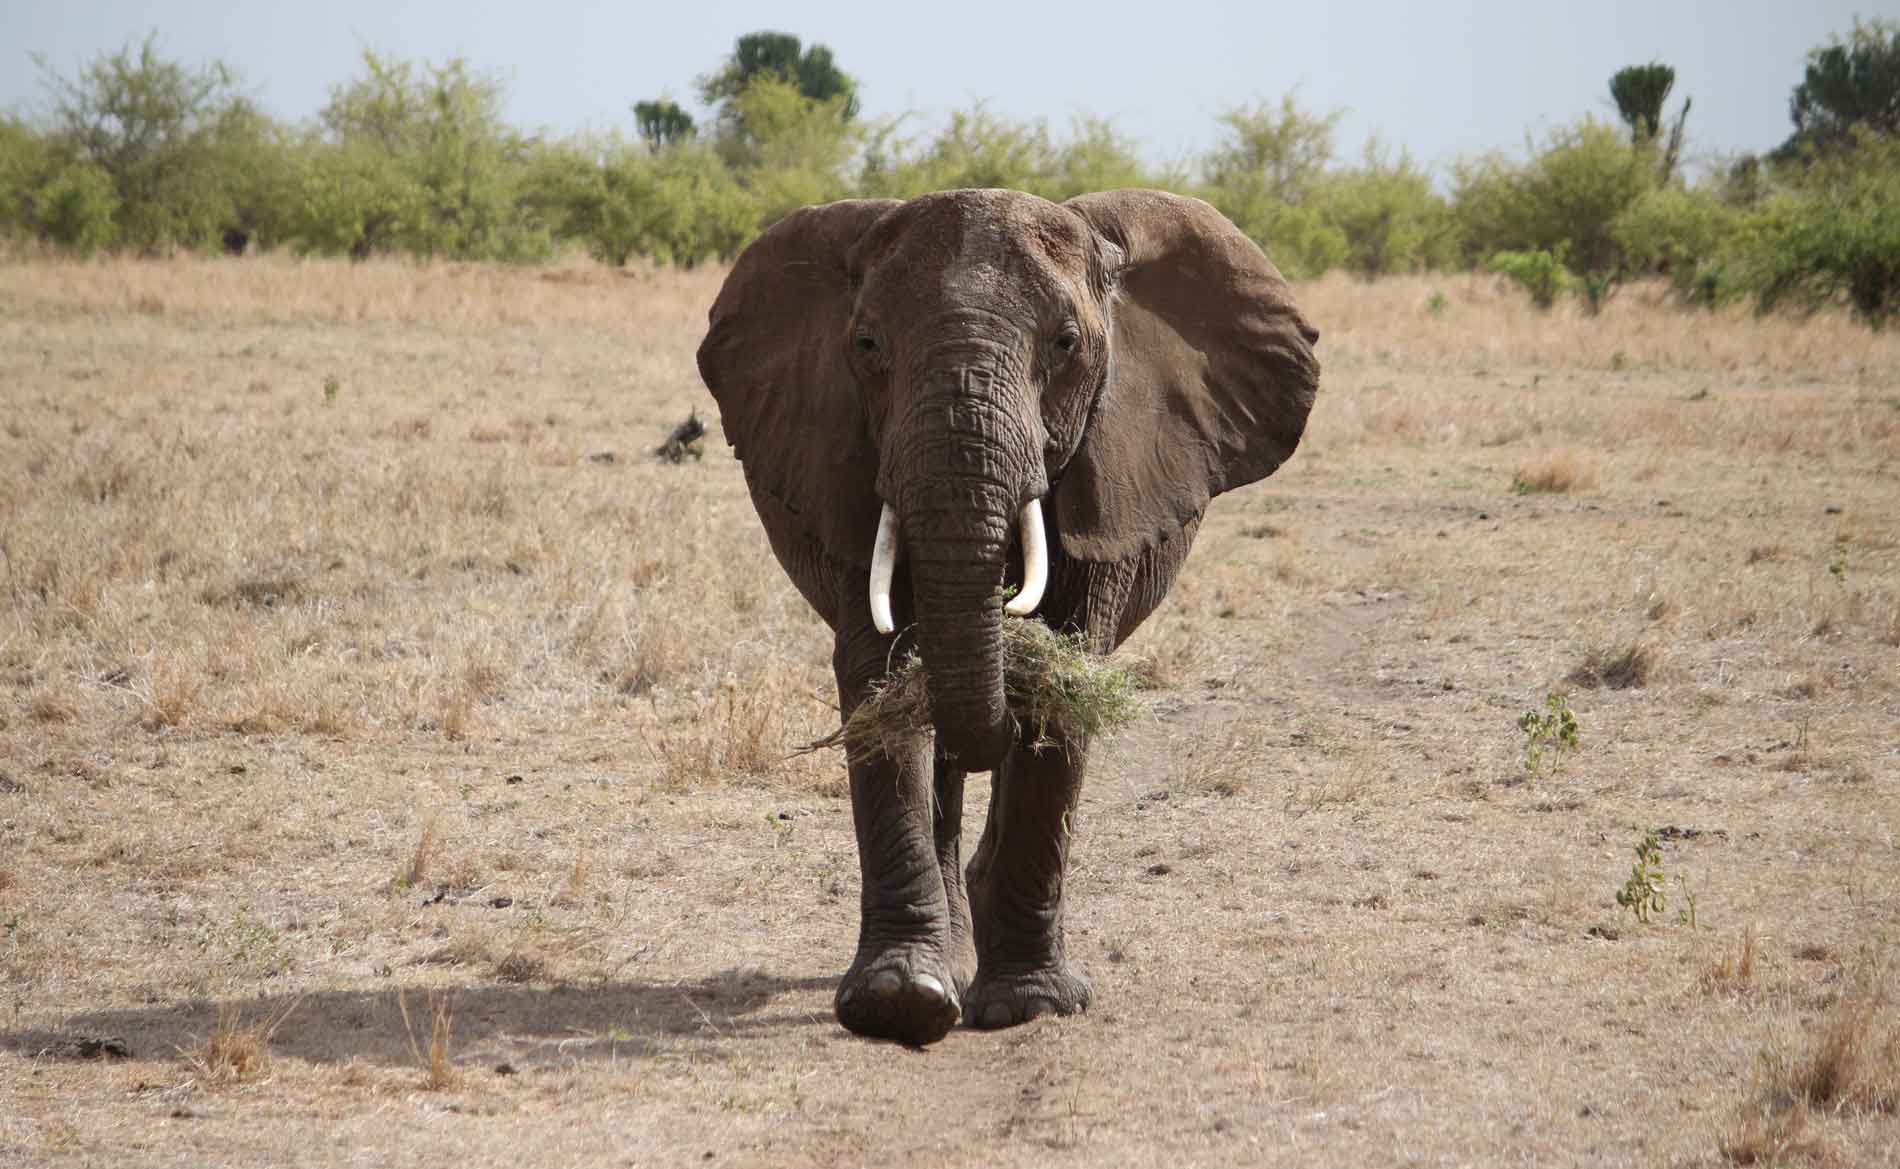 Eine trächtige Elefantenkuh im Tarangire Nationalpark läuft mit Gras im Rüssel genau auf die Kamera zu.